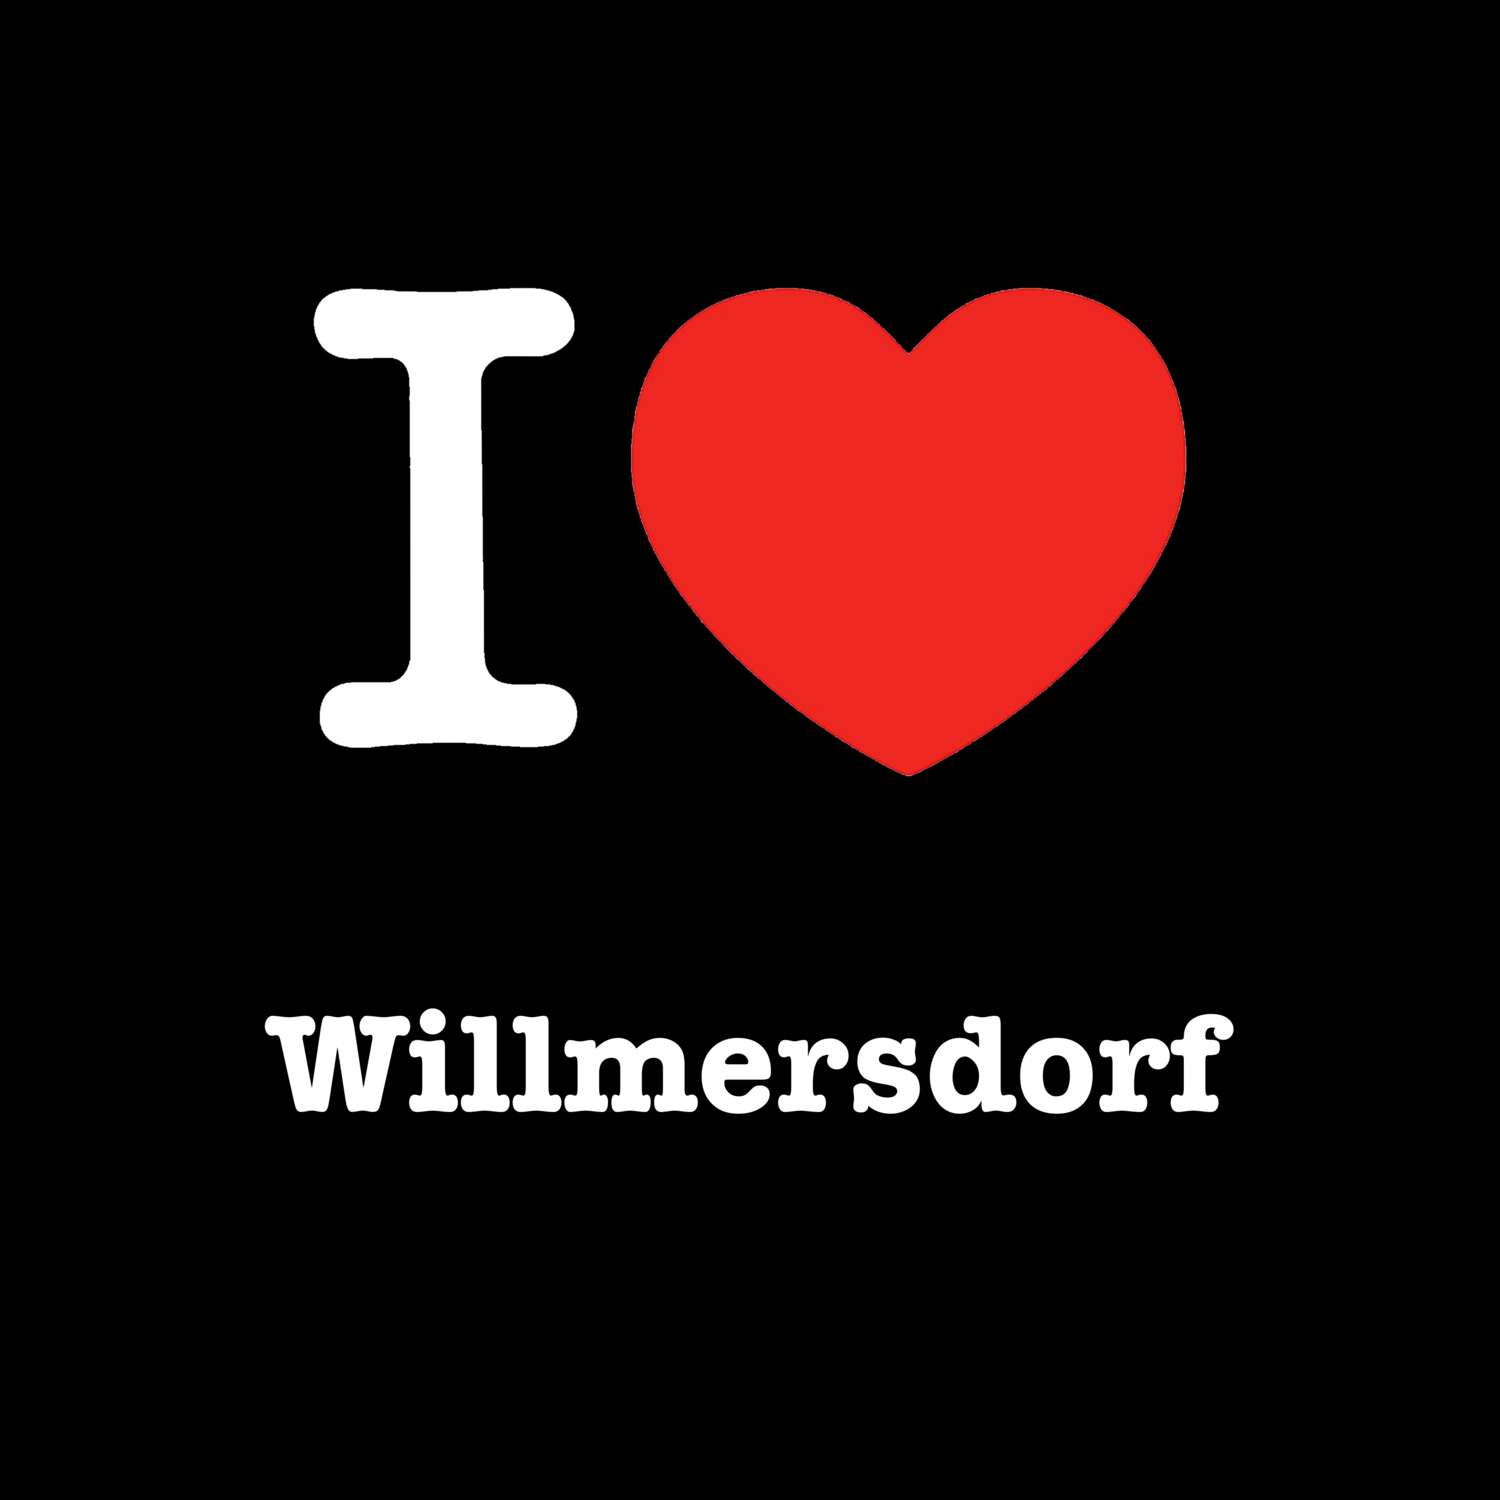 Willmersdorf T-Shirt »I love«